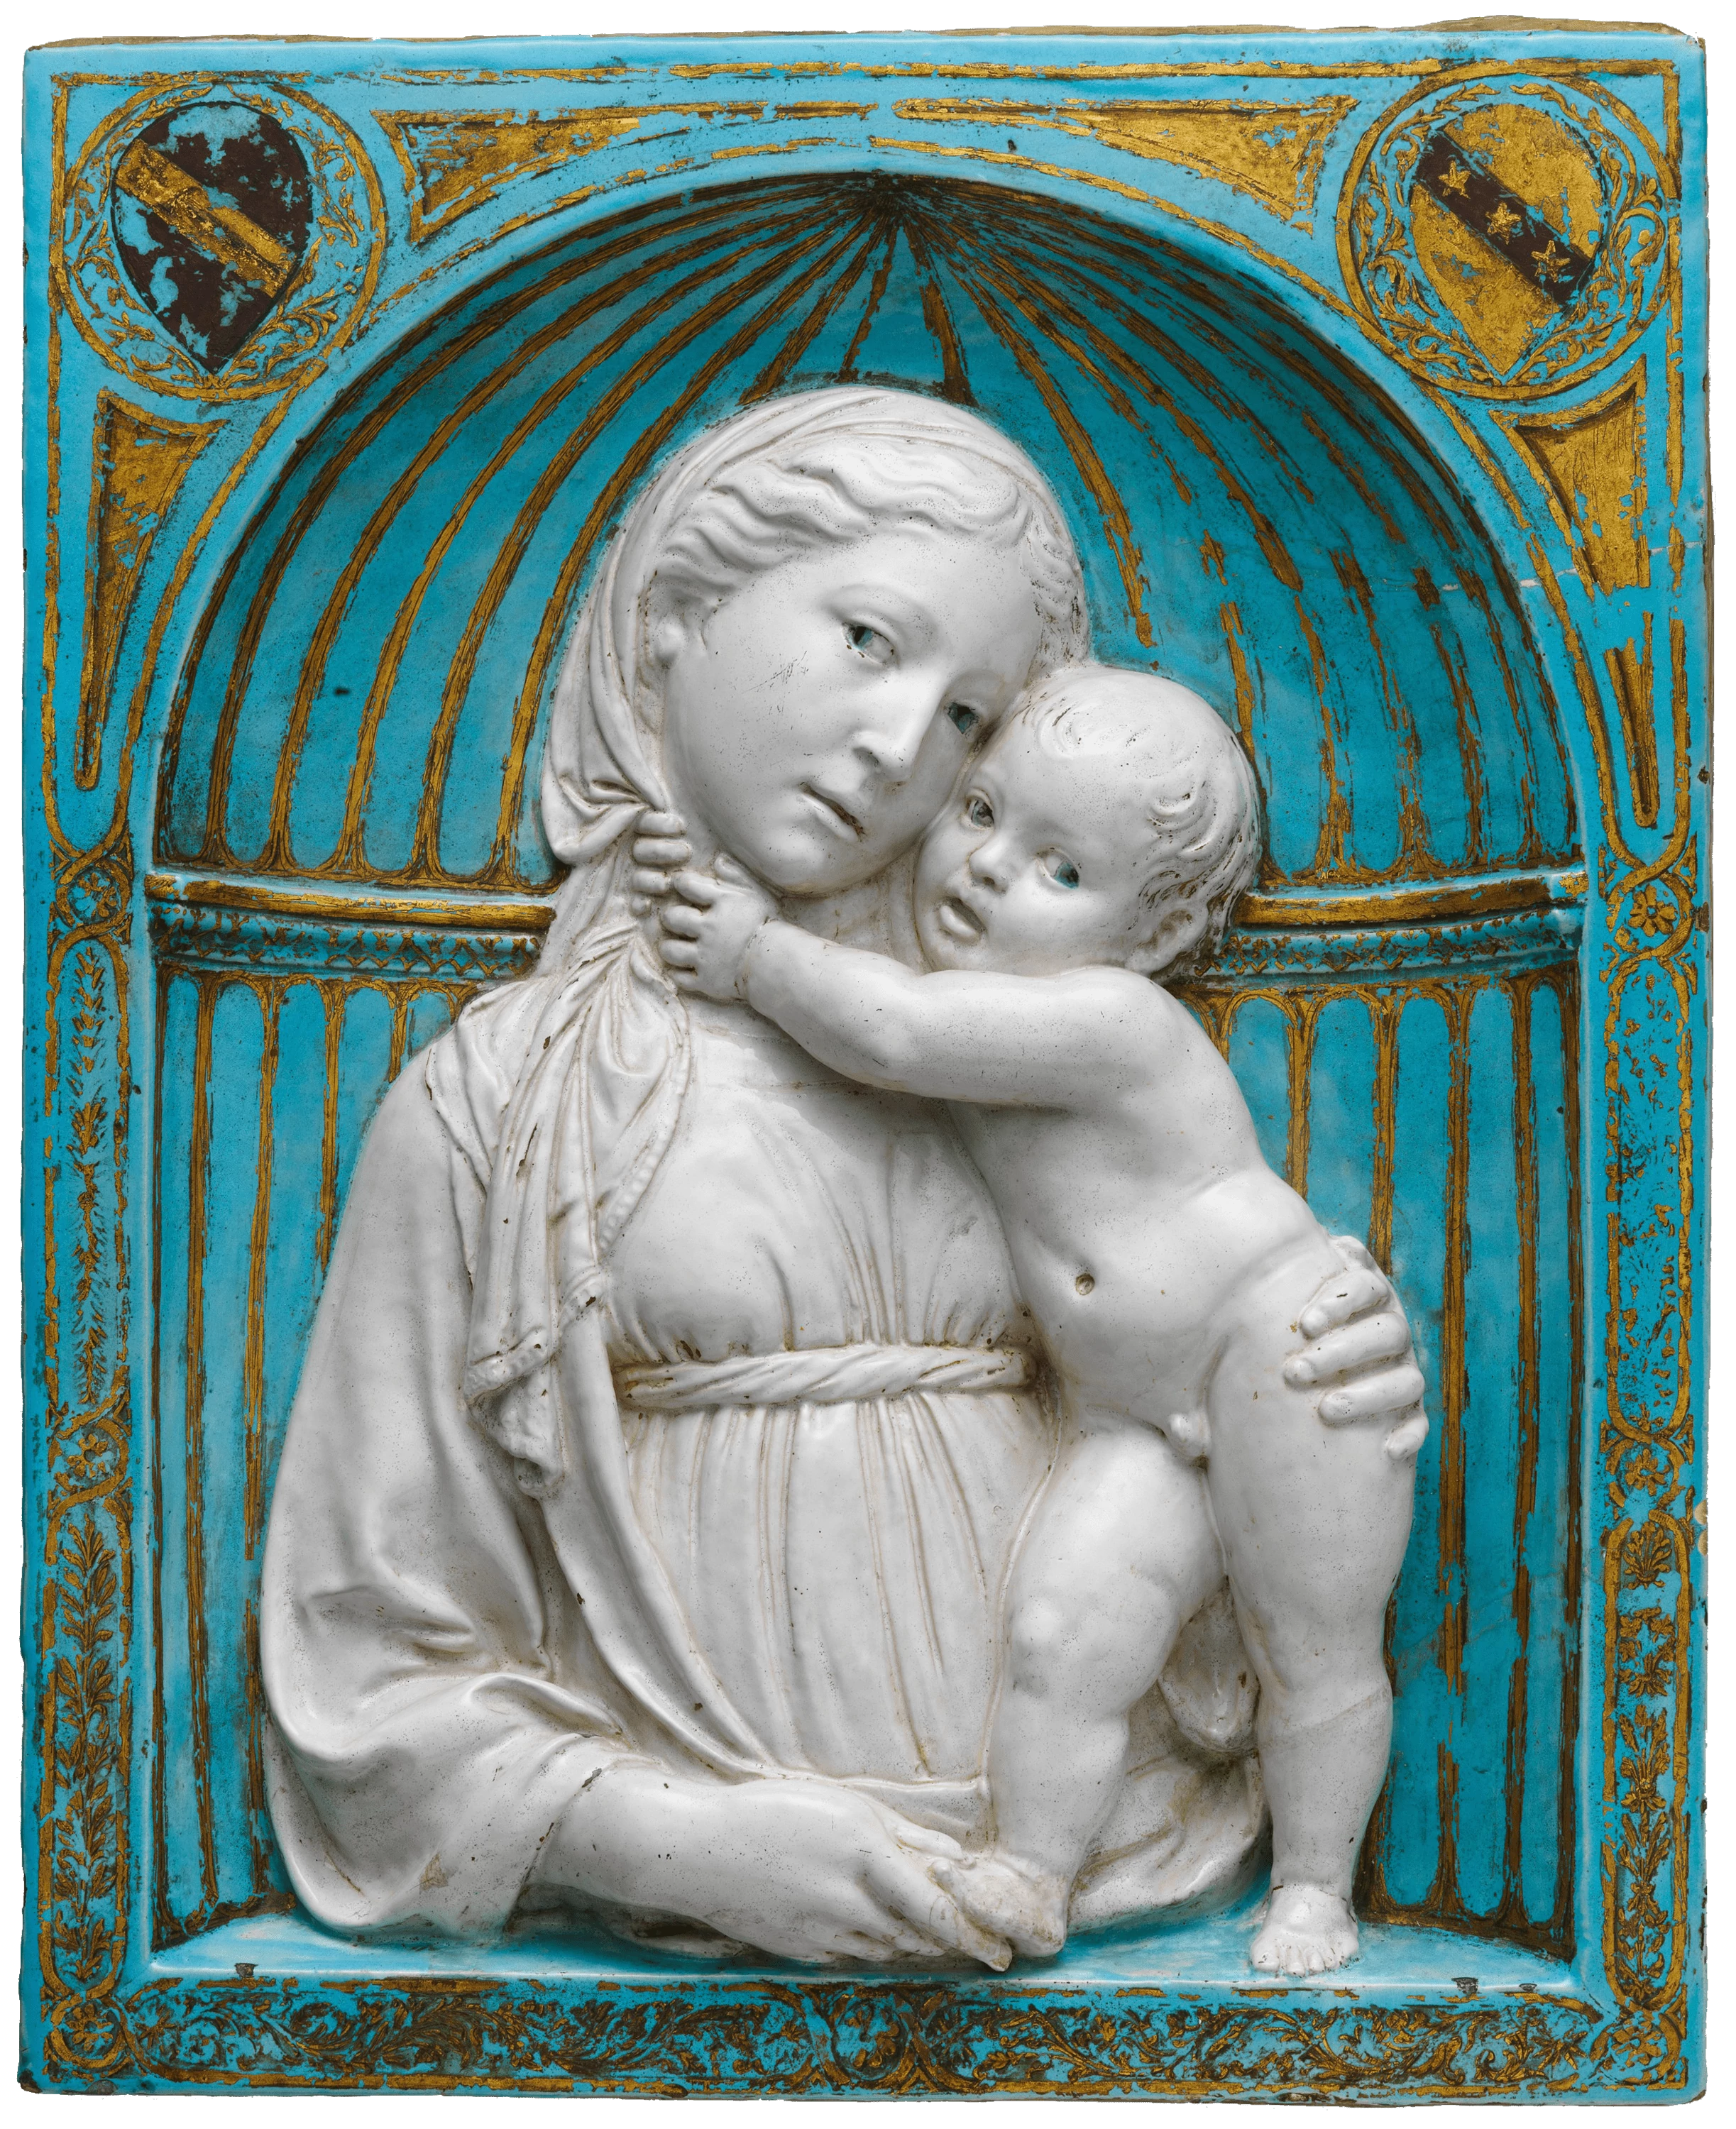 Virgin and Child in a niche, Luca della Robbia